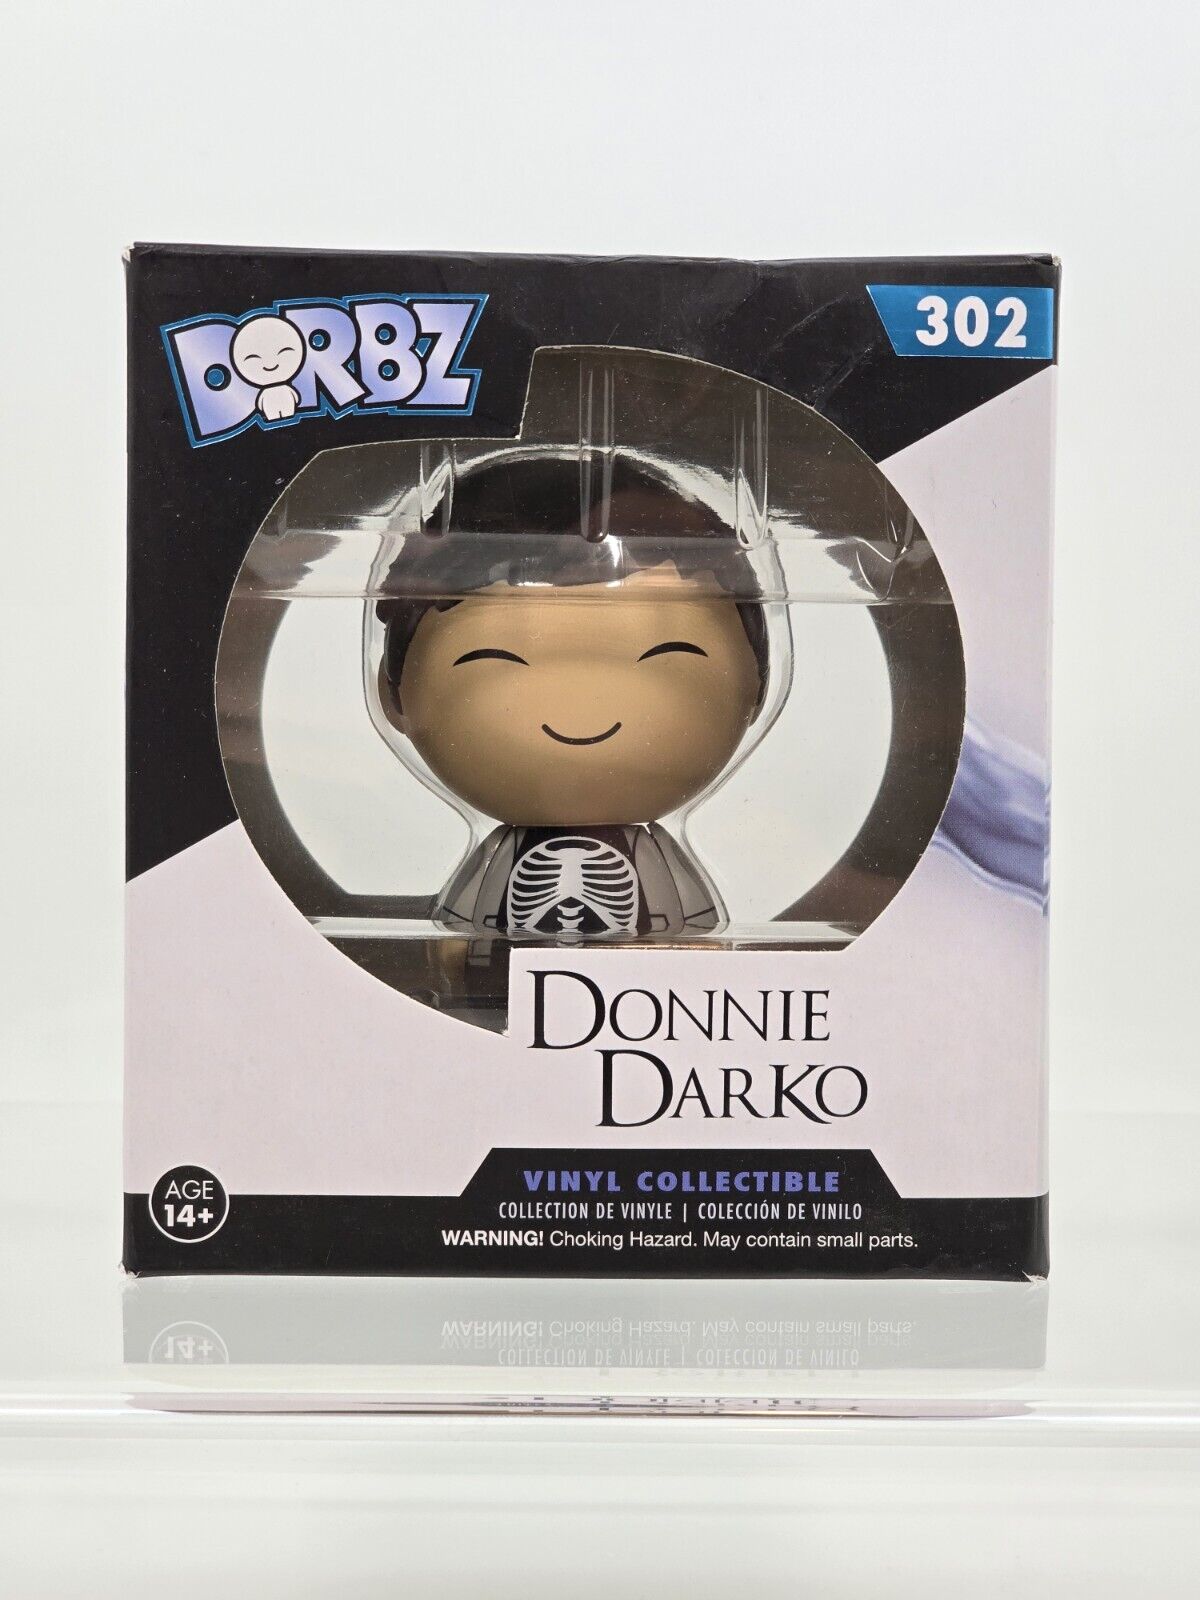 Donnie Darko Funko Dorbz #302 Vinyl Collectible Figure Retired New In Box NIB 